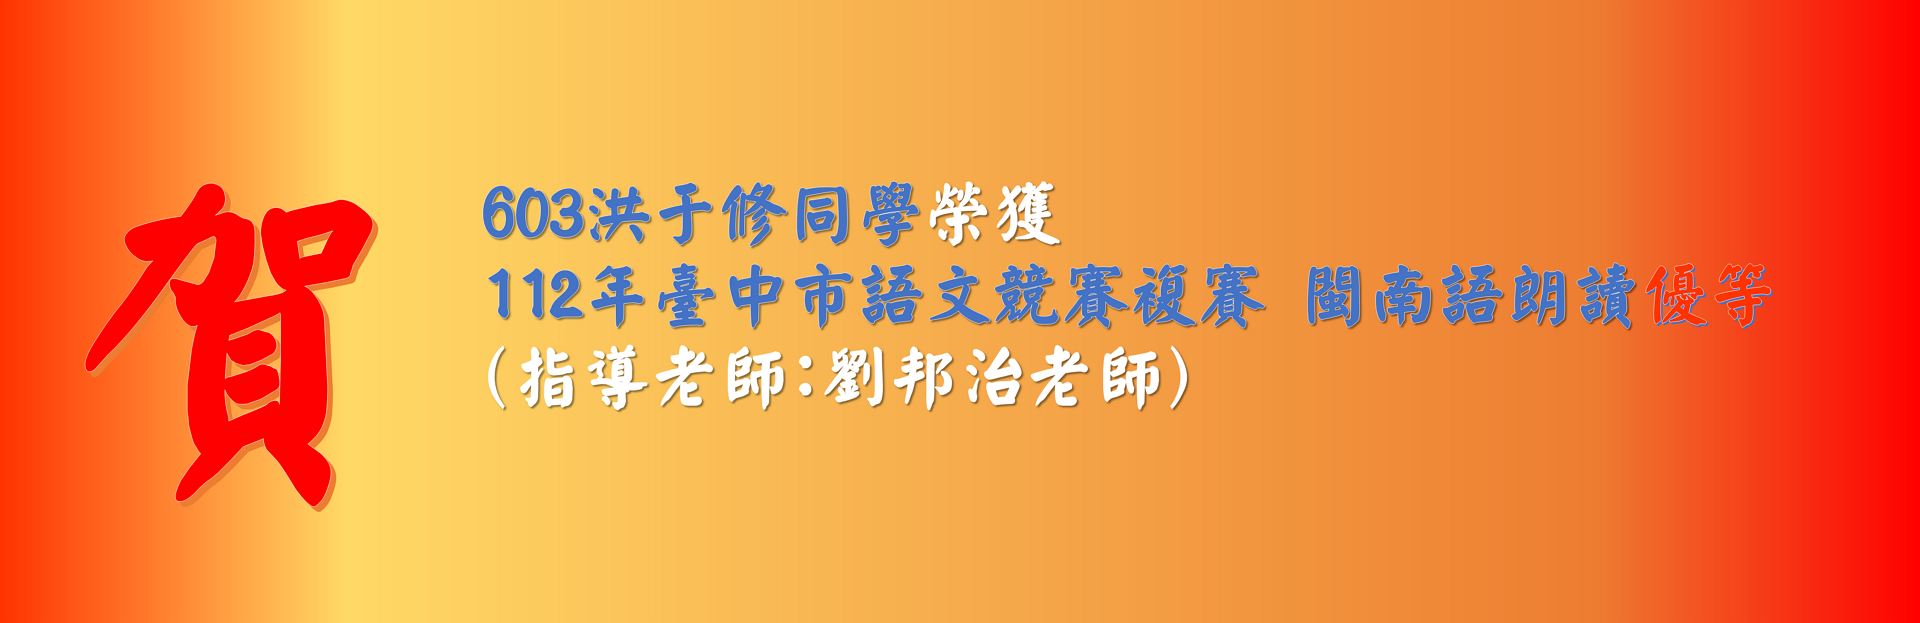 603洪于修同學榮獲 112年臺中市語文競賽複賽 閩南語朗讀優等